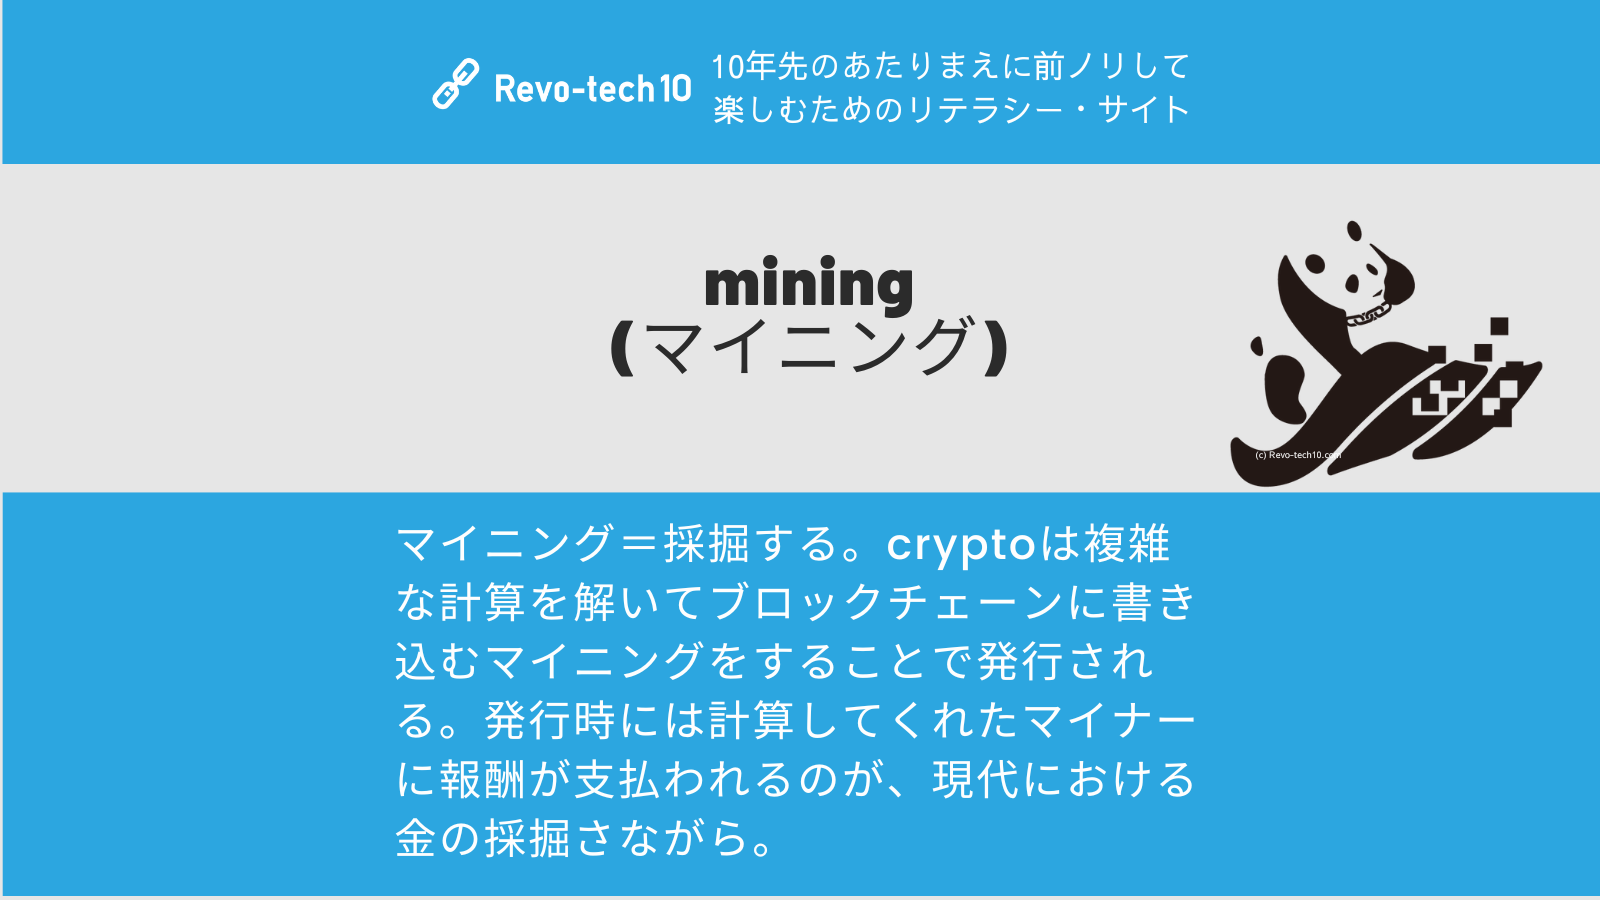 0064_mining (マイニング)とは採掘する。cryptoは複雑な計算を解いてブロックチェーンに書き込むマイニングをすることで発行される。発行時には計算してくれたマイナーに報酬が支払われるのが、現代における金の採掘さながら。